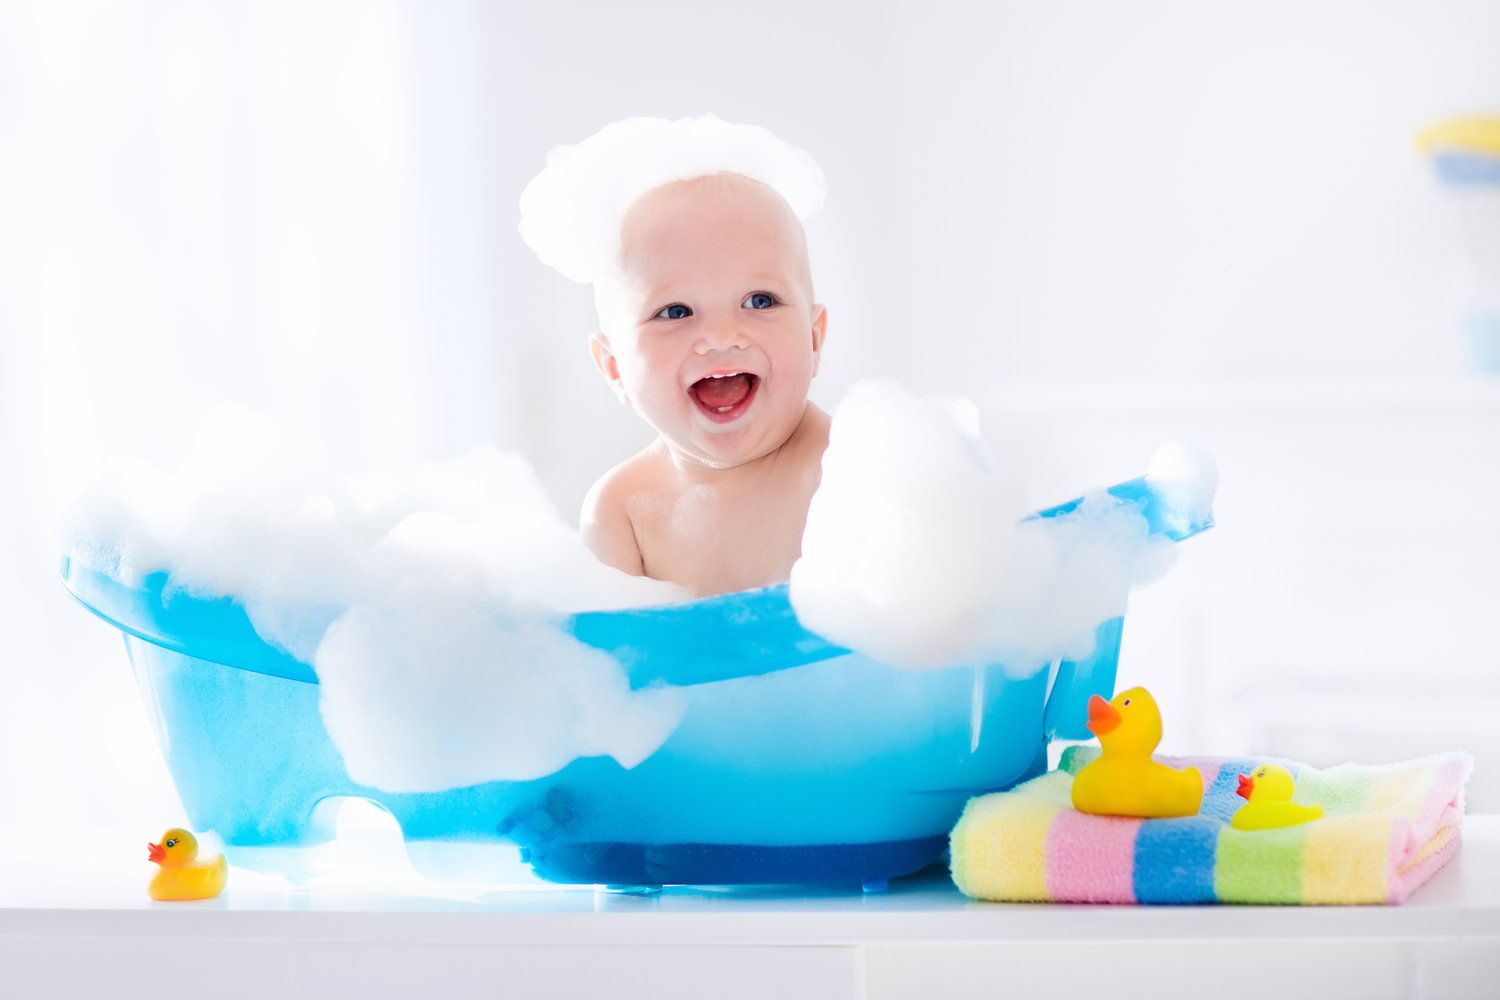 La temperatura ideal para el baño de un bebé recién nacido